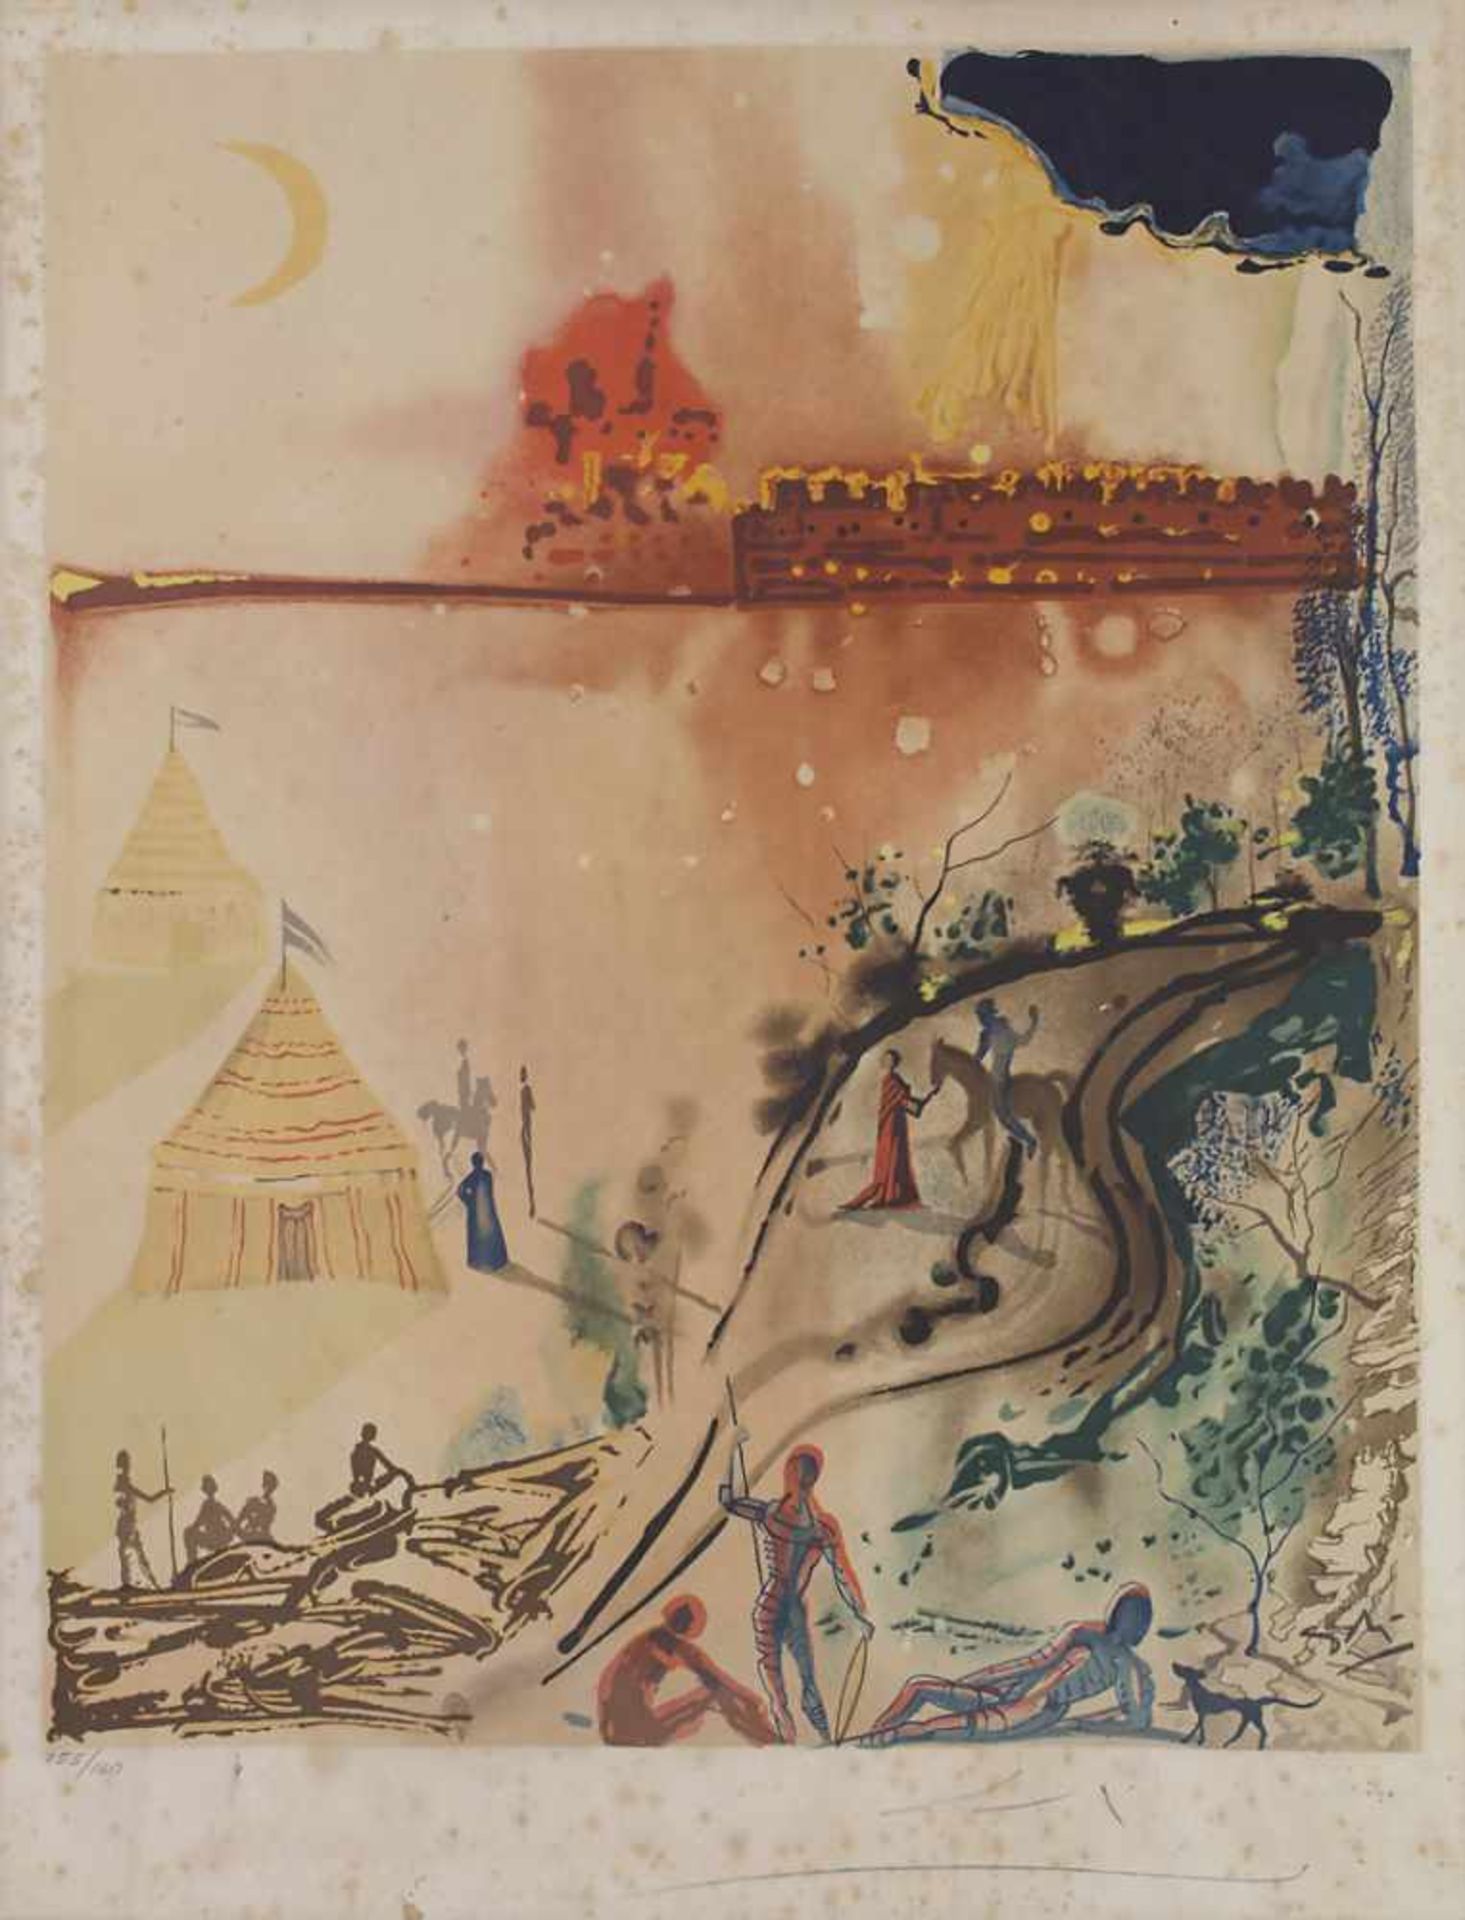 Salvador Dali (1904-1989), 'Ohne Titel' / 'Untitled'Technik: Farblithografie auf Papier, Signatur: